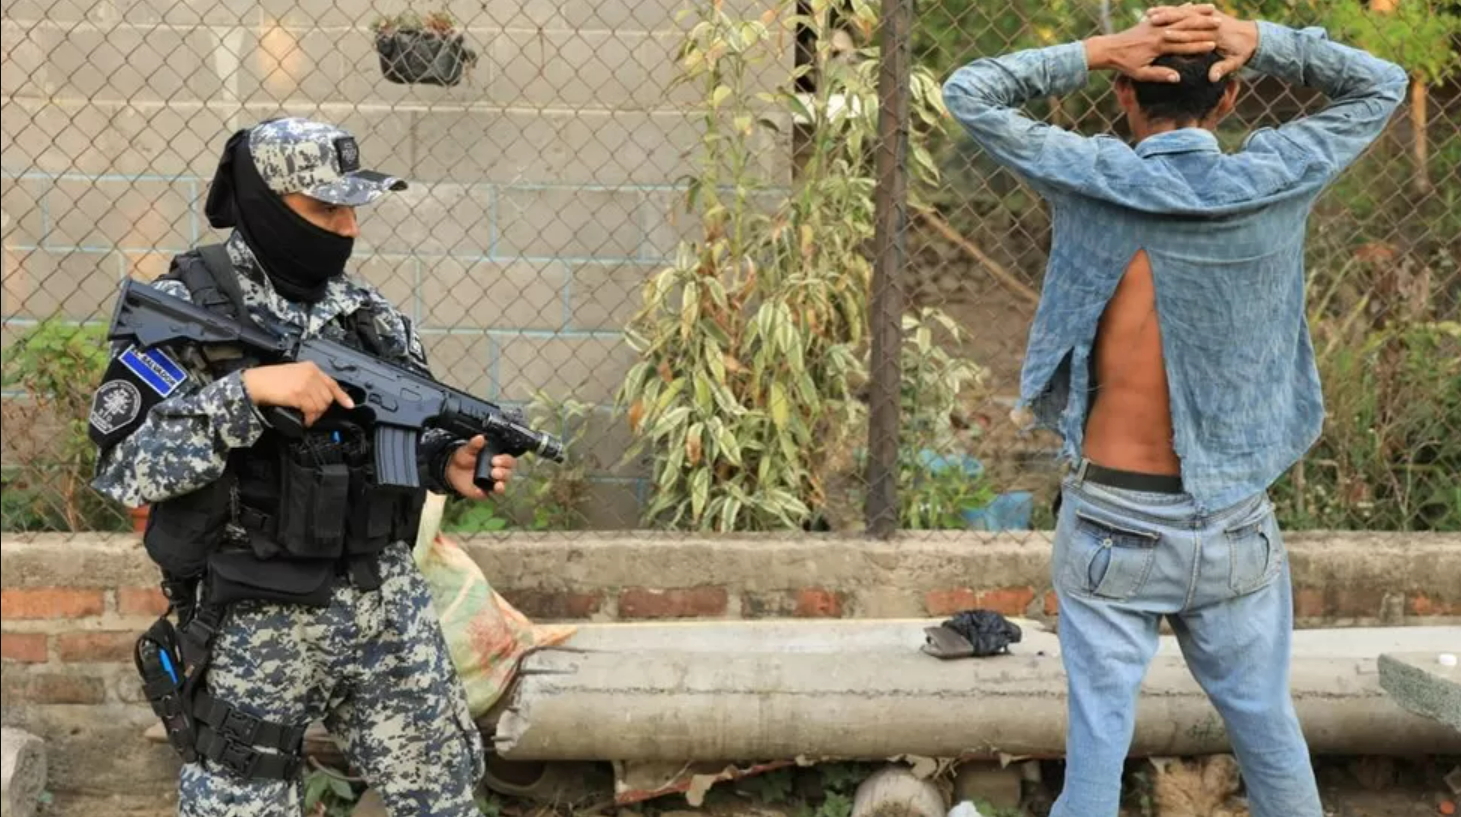 عنصر من شرطة السلفادور يوجه سلاحه إلى أحد الأشخاص الذي يضع يديه فوق رأسه